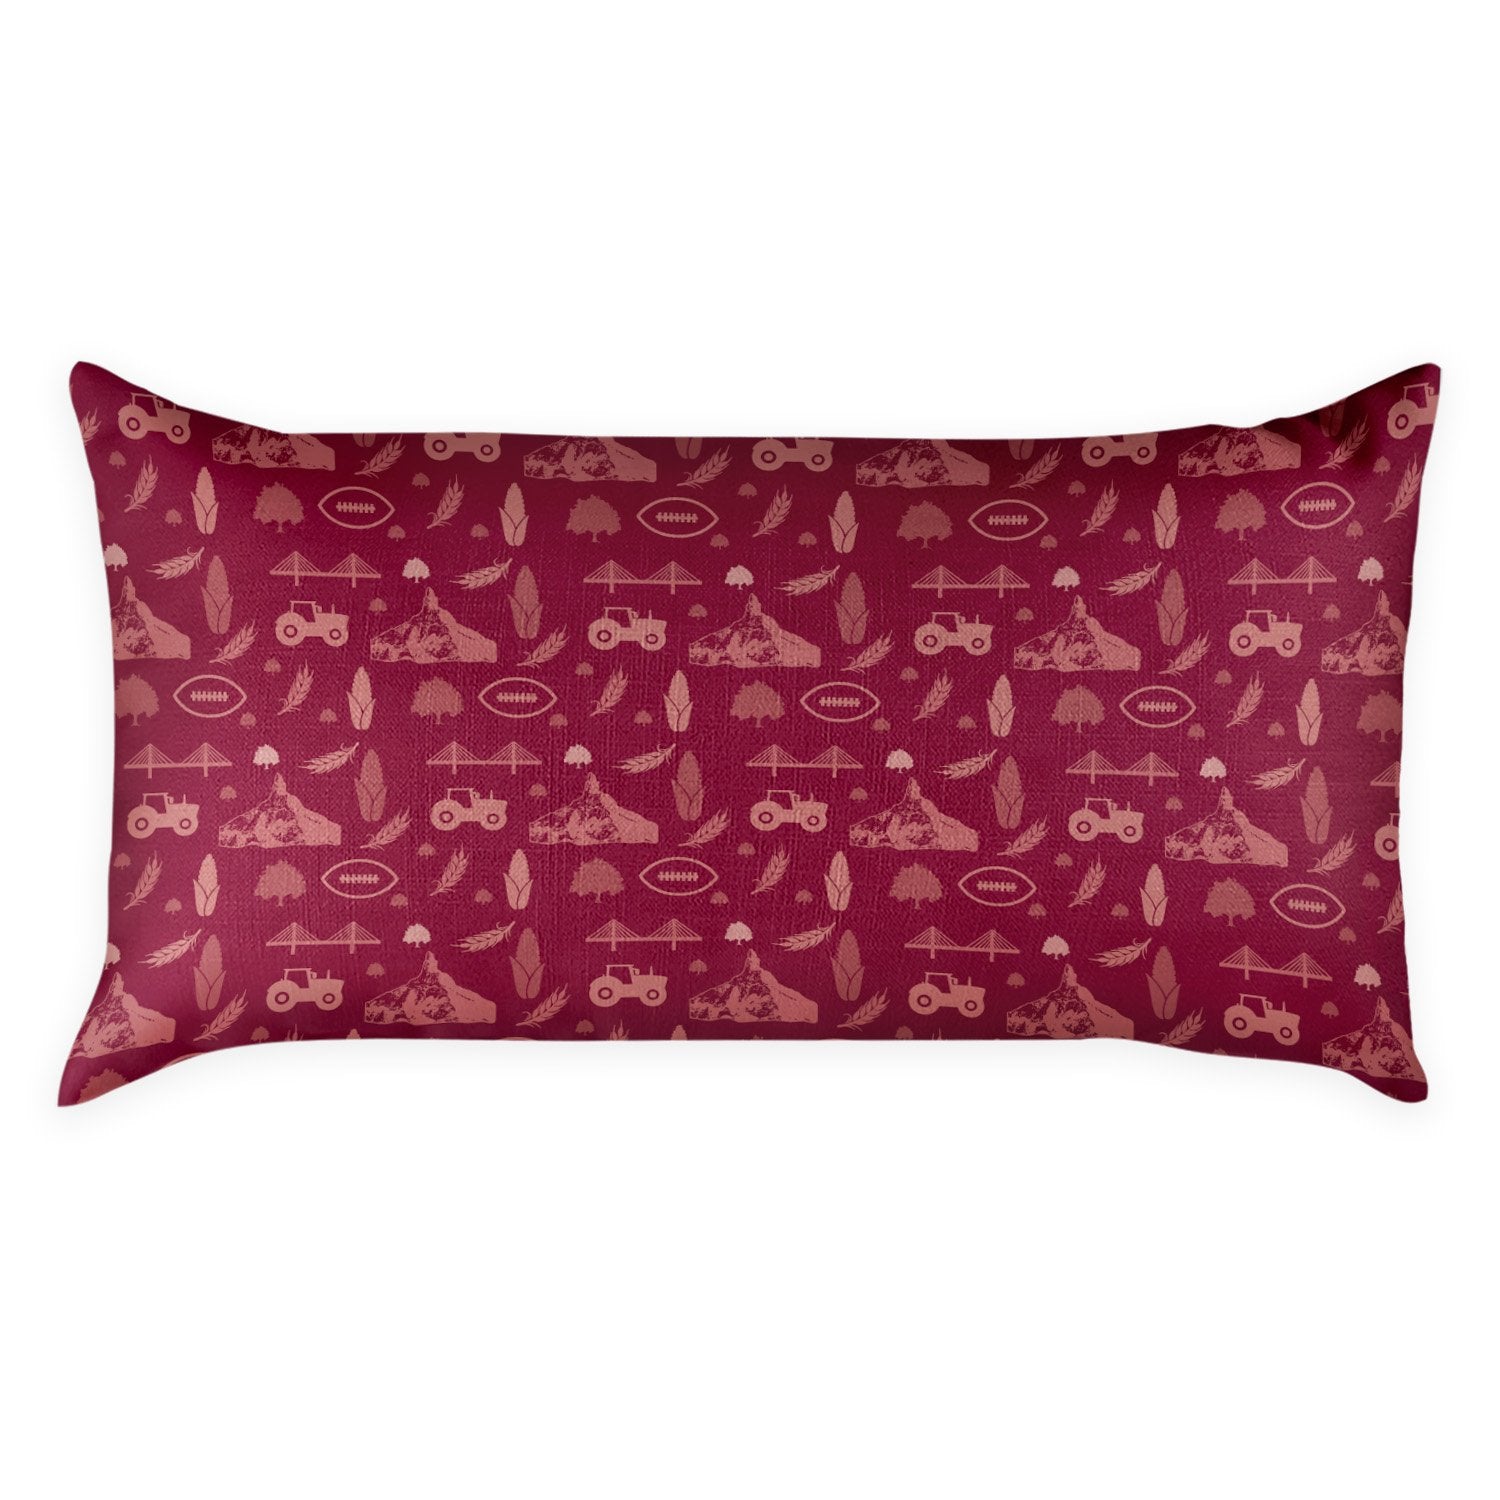 Nebraska Lumbar Pillow -  -  - Knotty Tie Co.